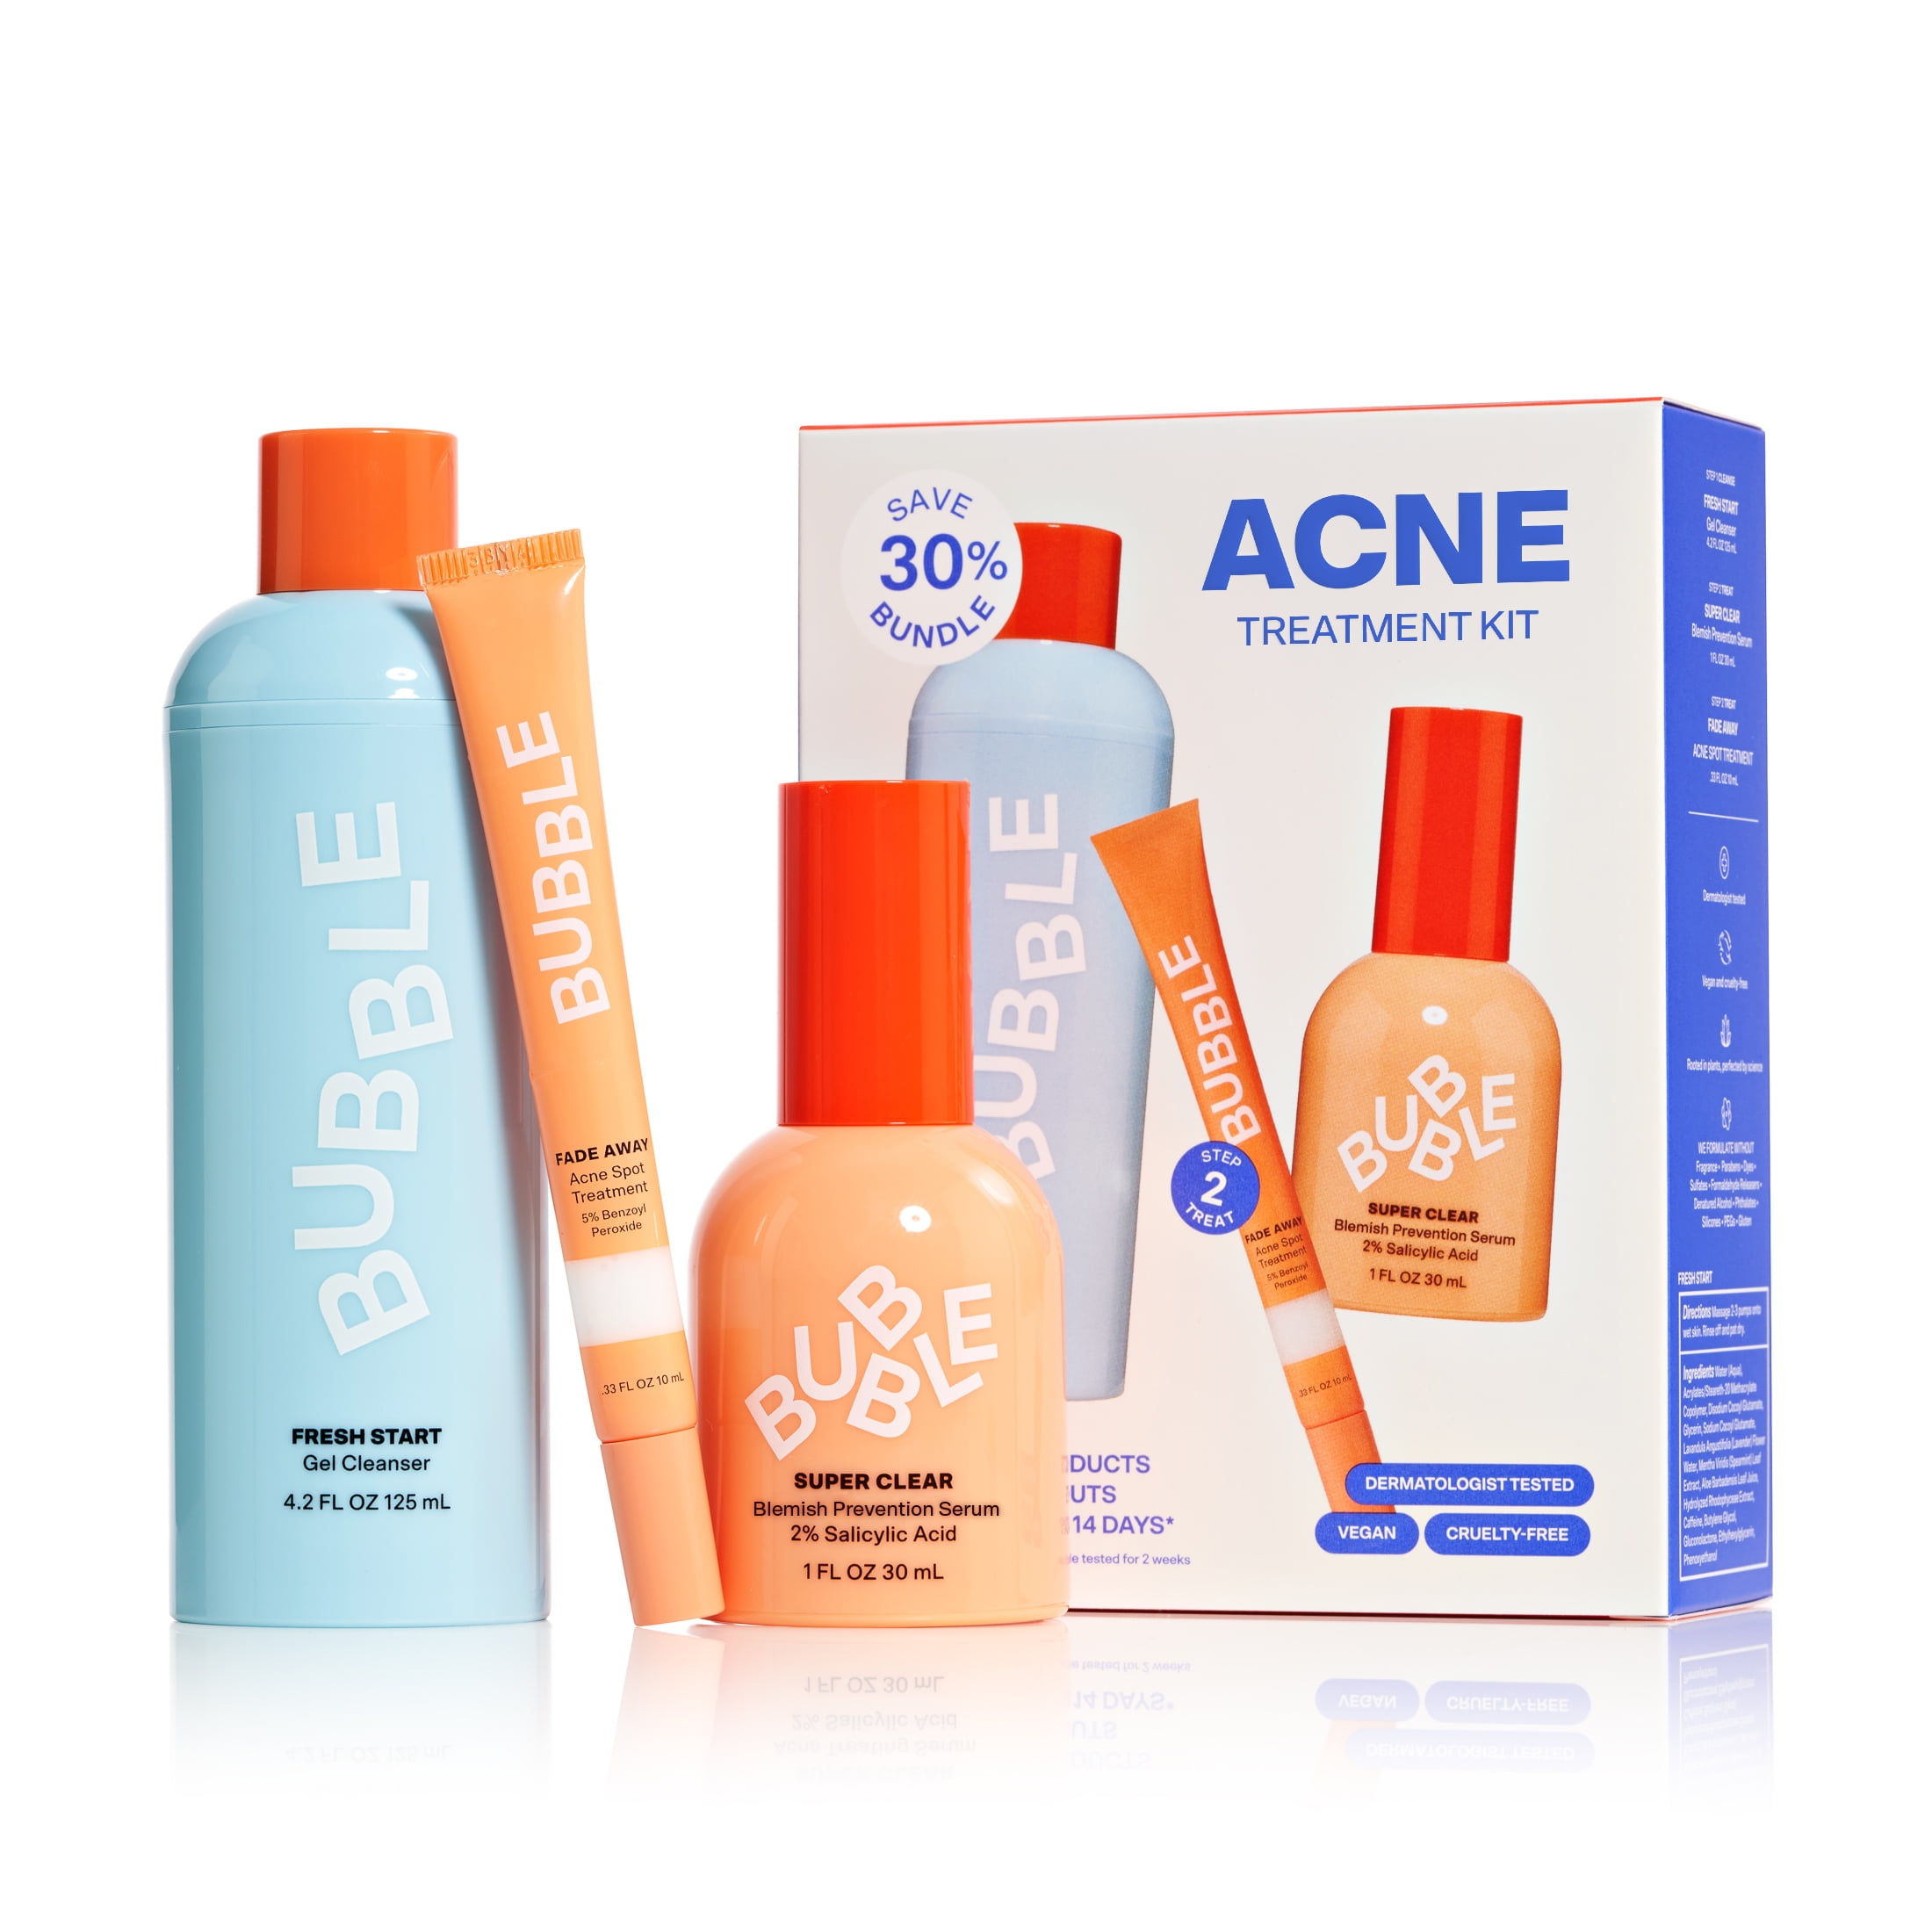 Bubble Skincare  The Full Set 7 Product Skincare Routine Bundle